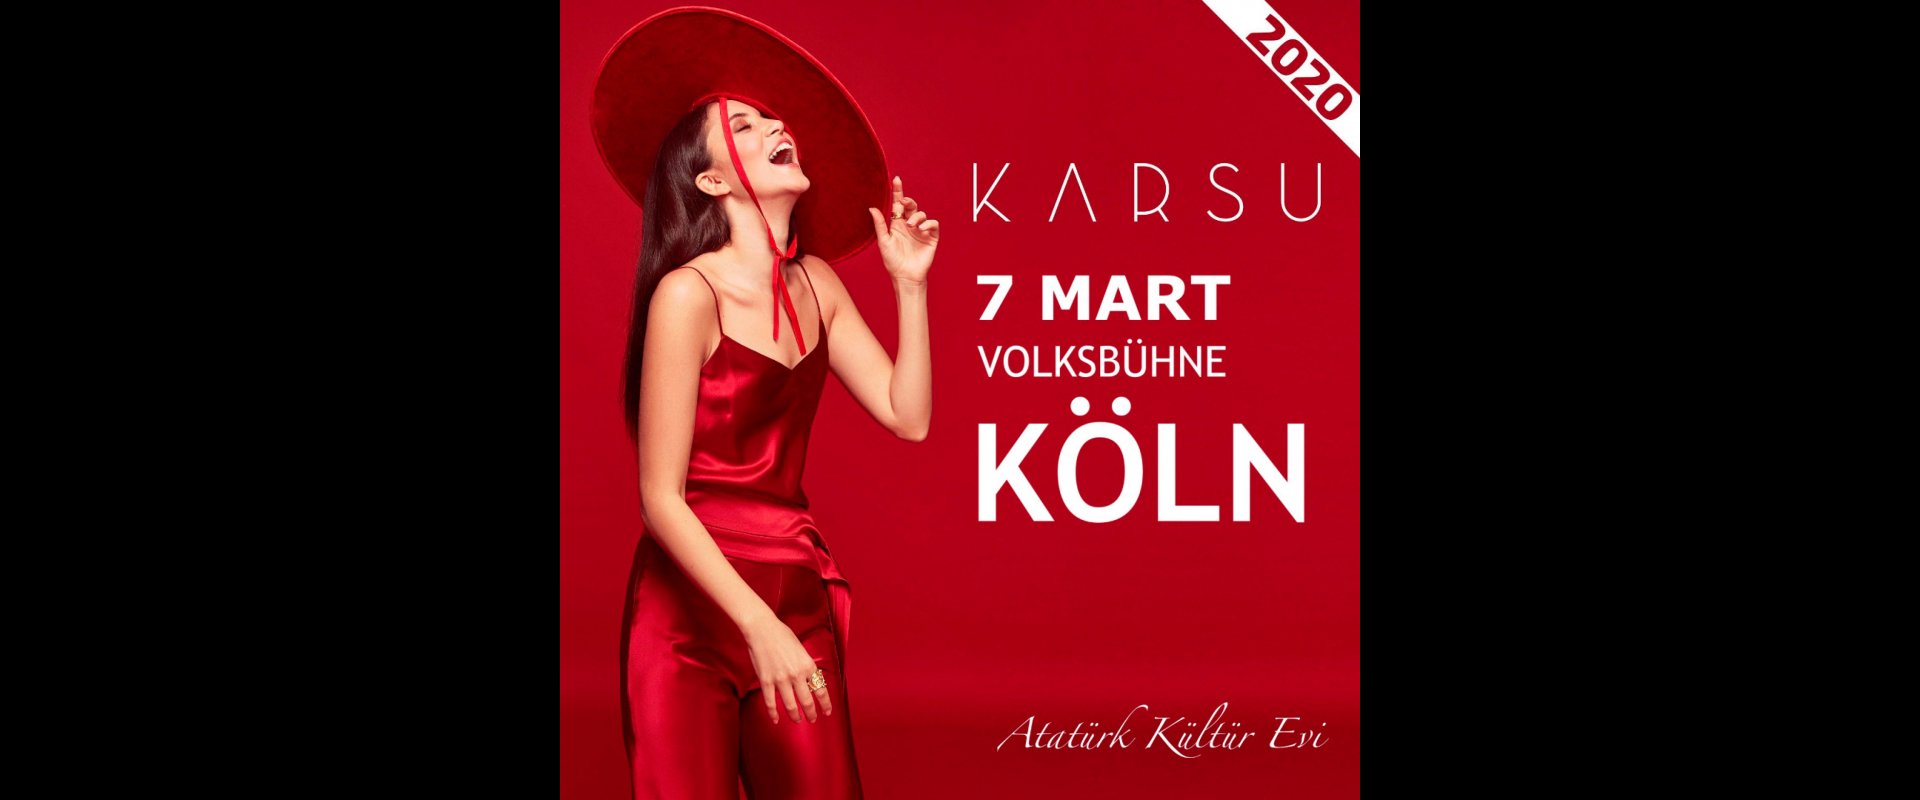 KARSU live in Köln